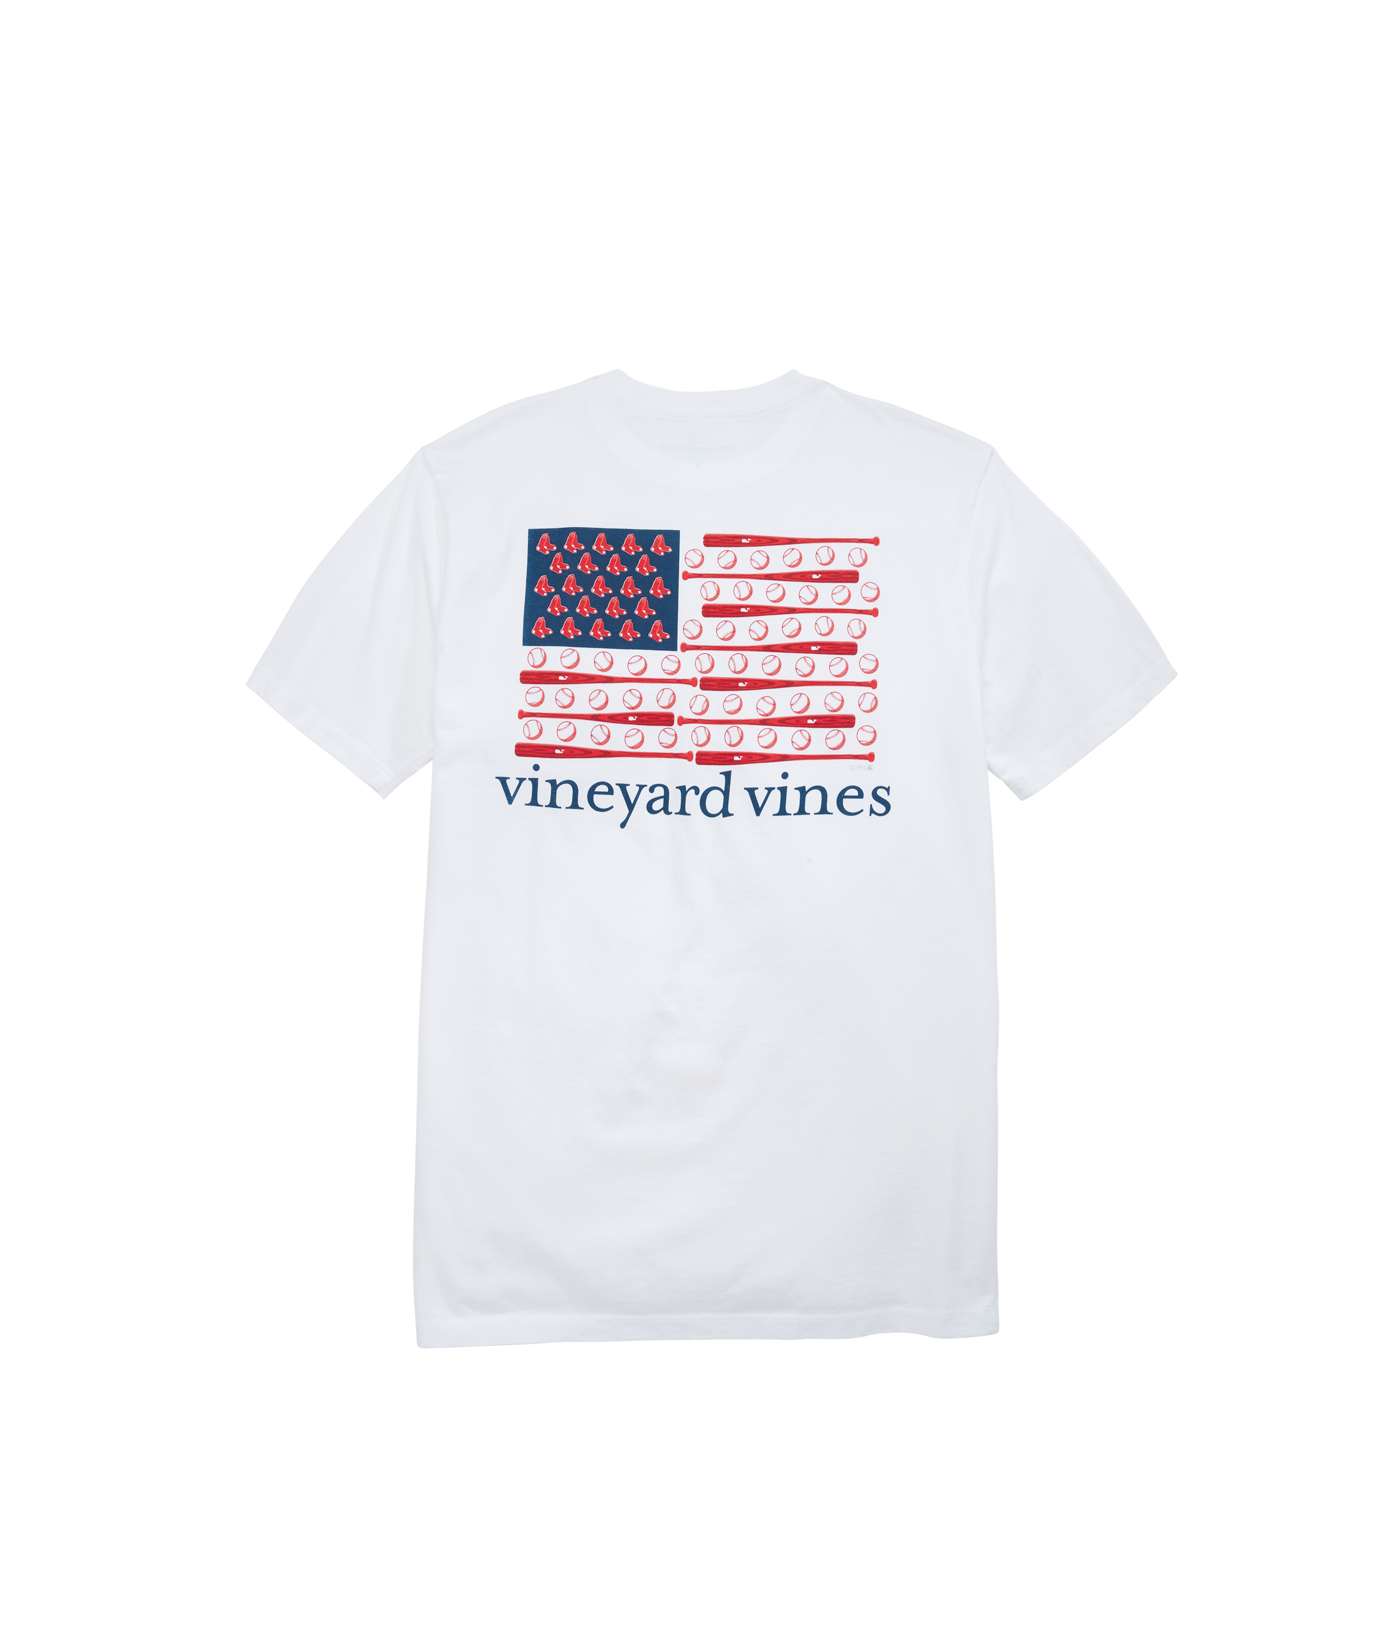 Shop Boston Red Sox Hoodie at vineyard vines